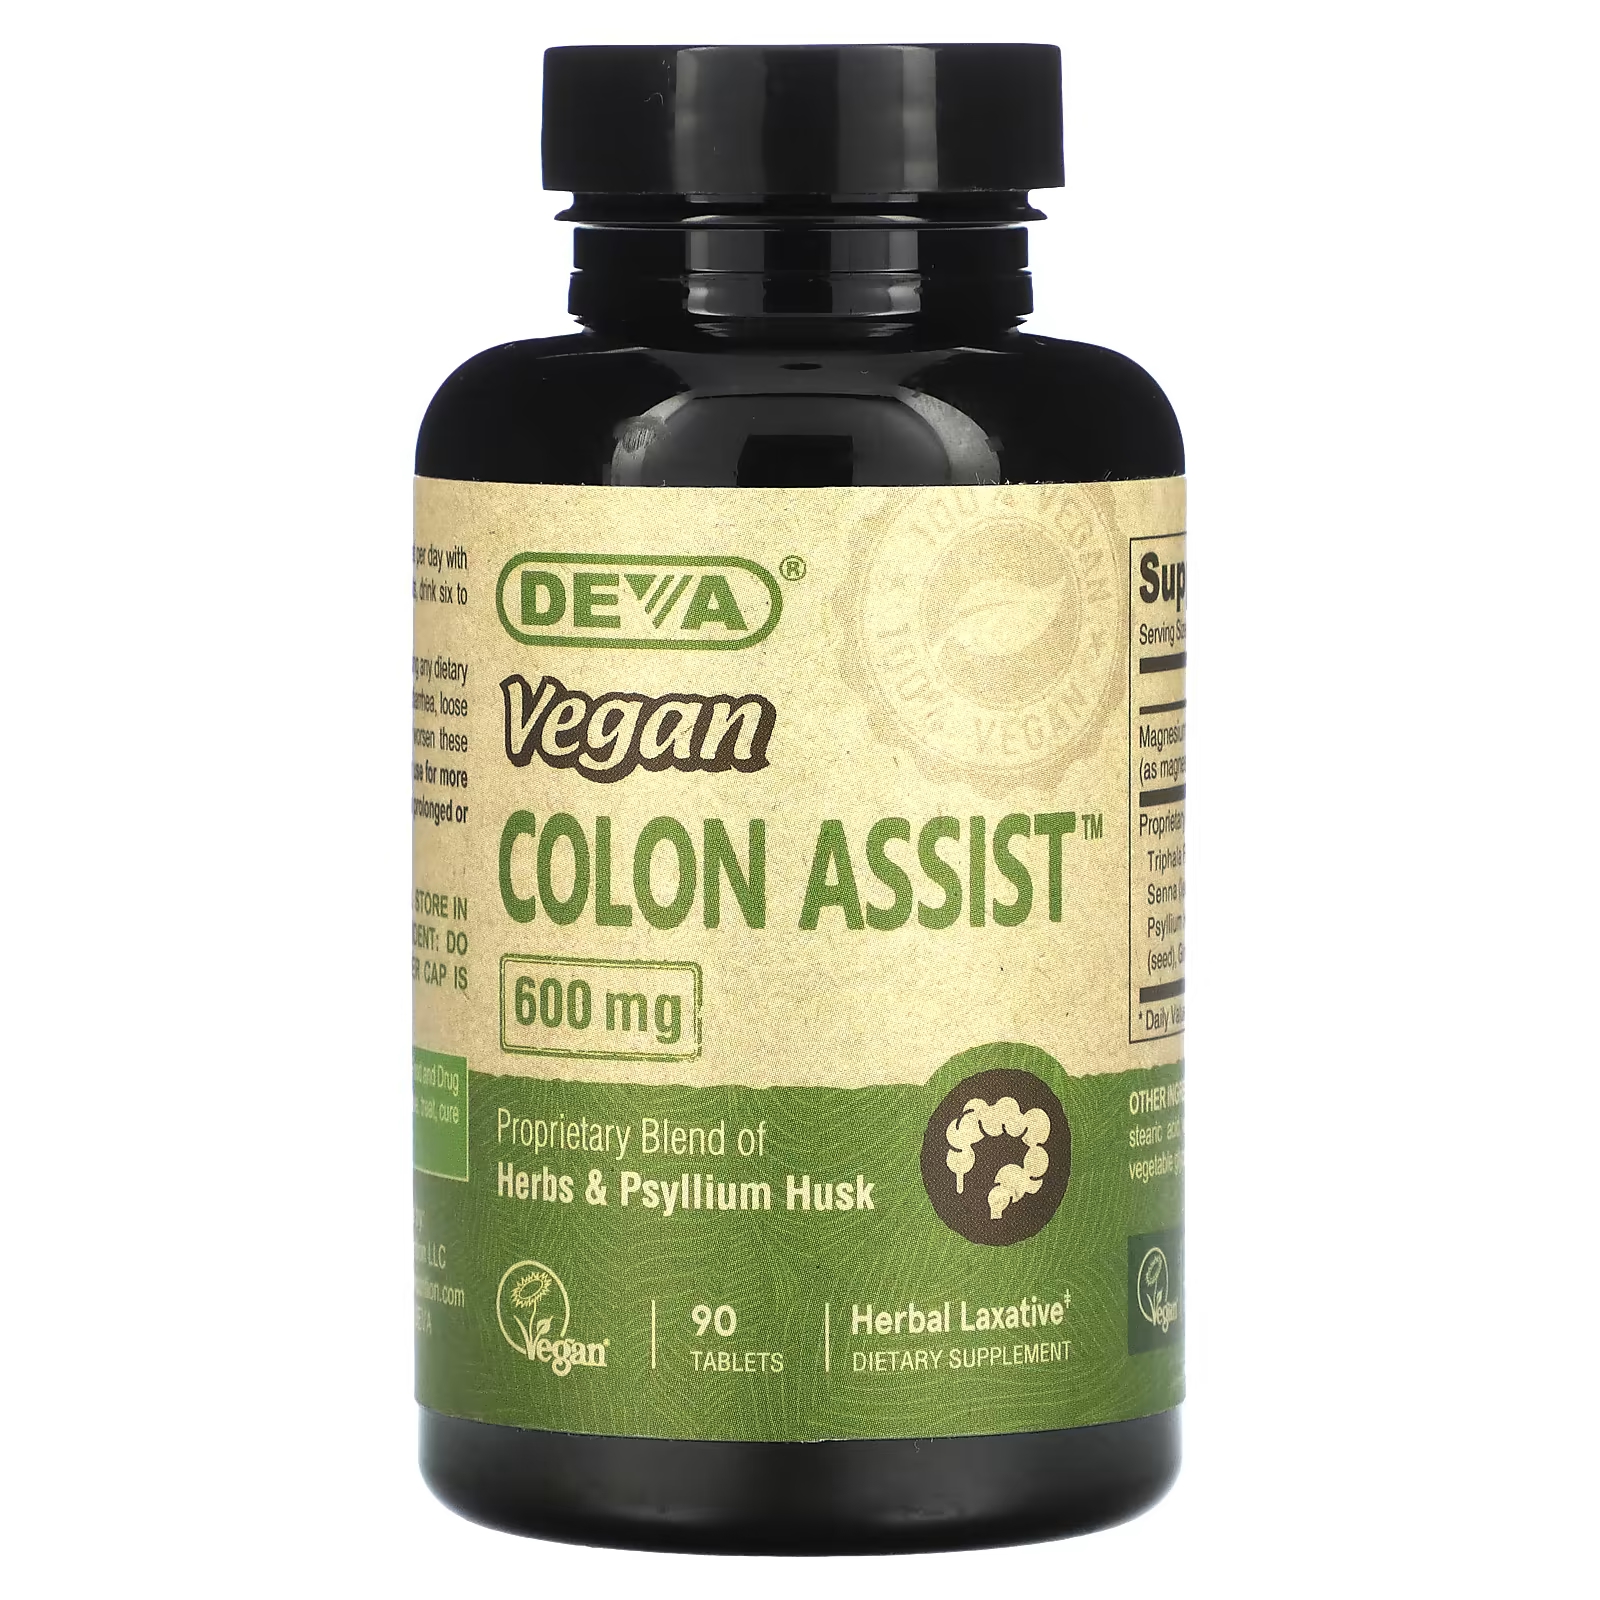 Пищевая добавка Deva Vegan Colon Assist 600 мг, 90 таблеток пищевая добавка deva vegan hyaluronic acid 100 мг